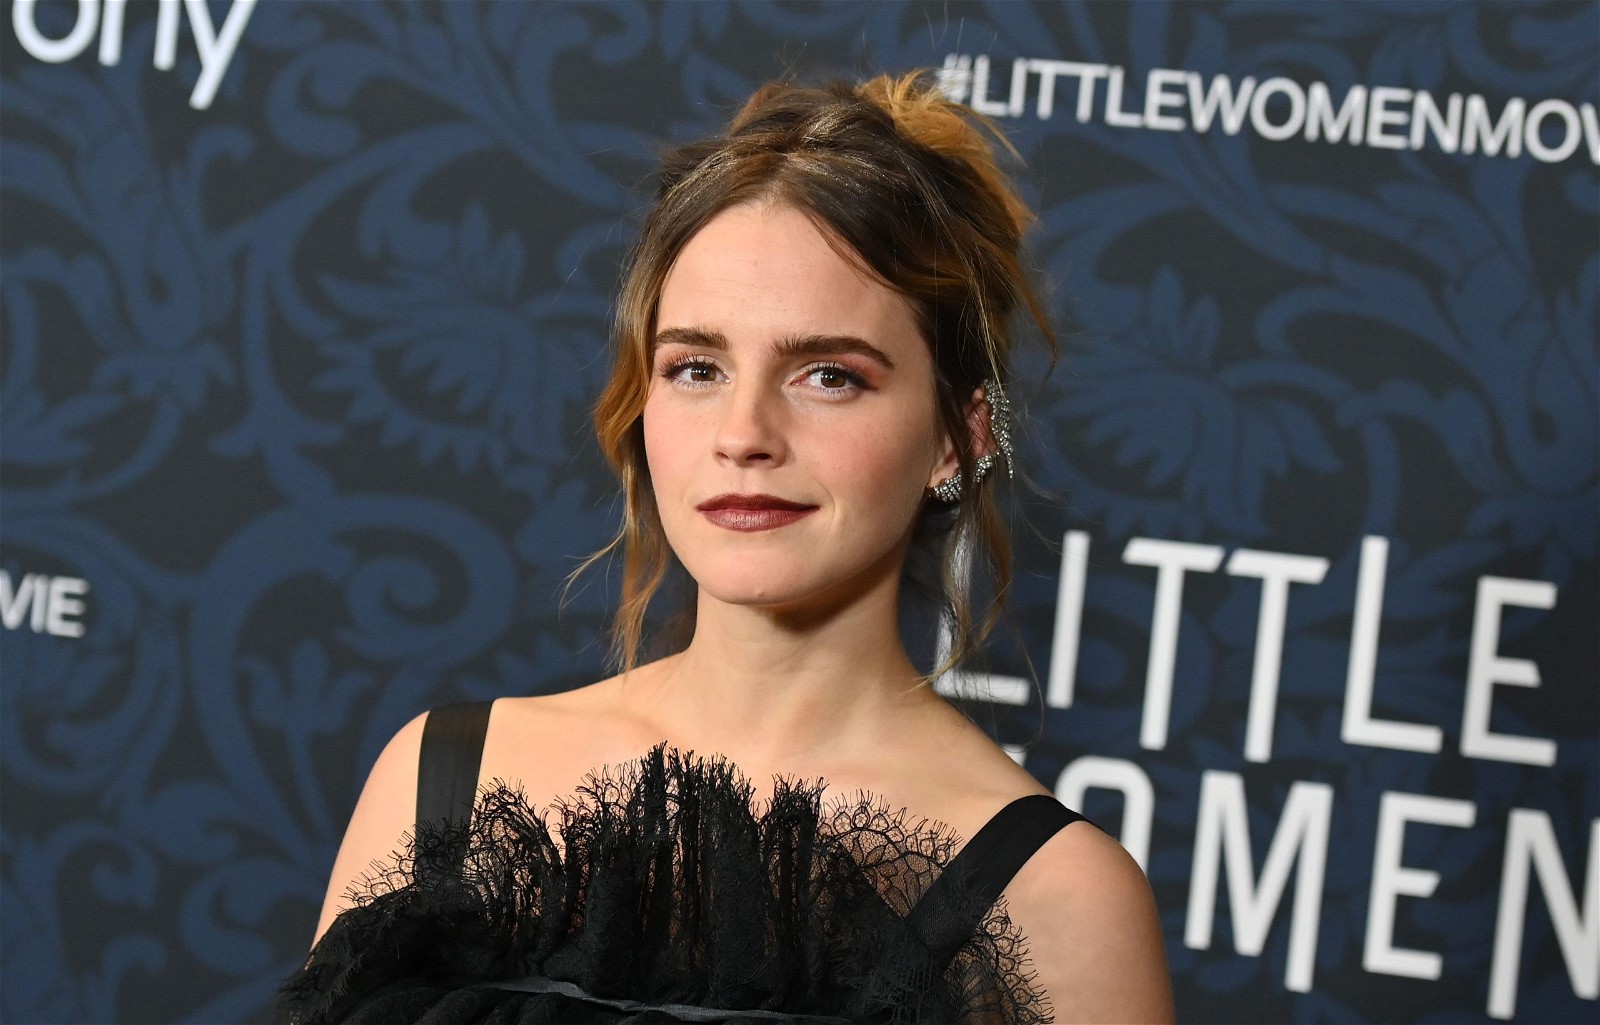 Emma Watson at the Little Women premiere